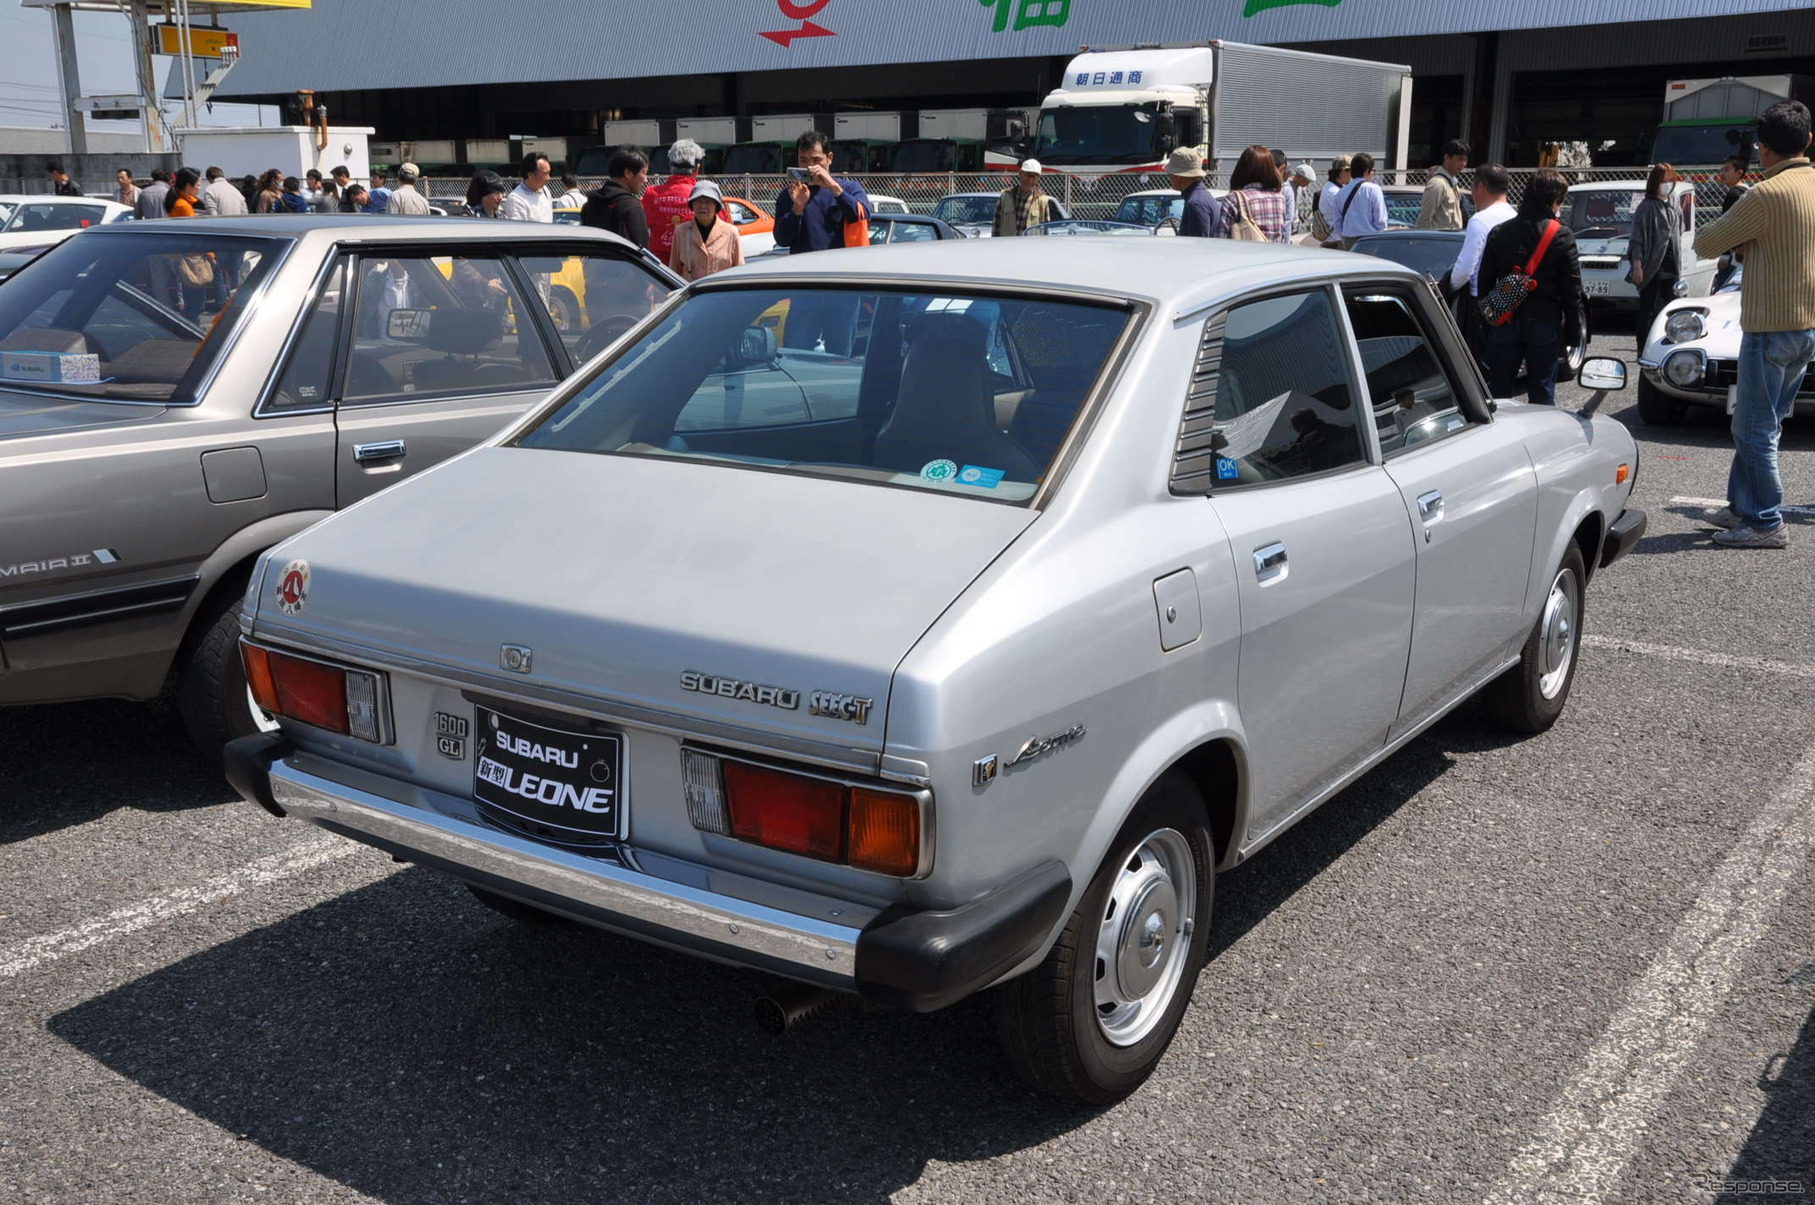 1978年式 スバル レオーネ 1600 GL